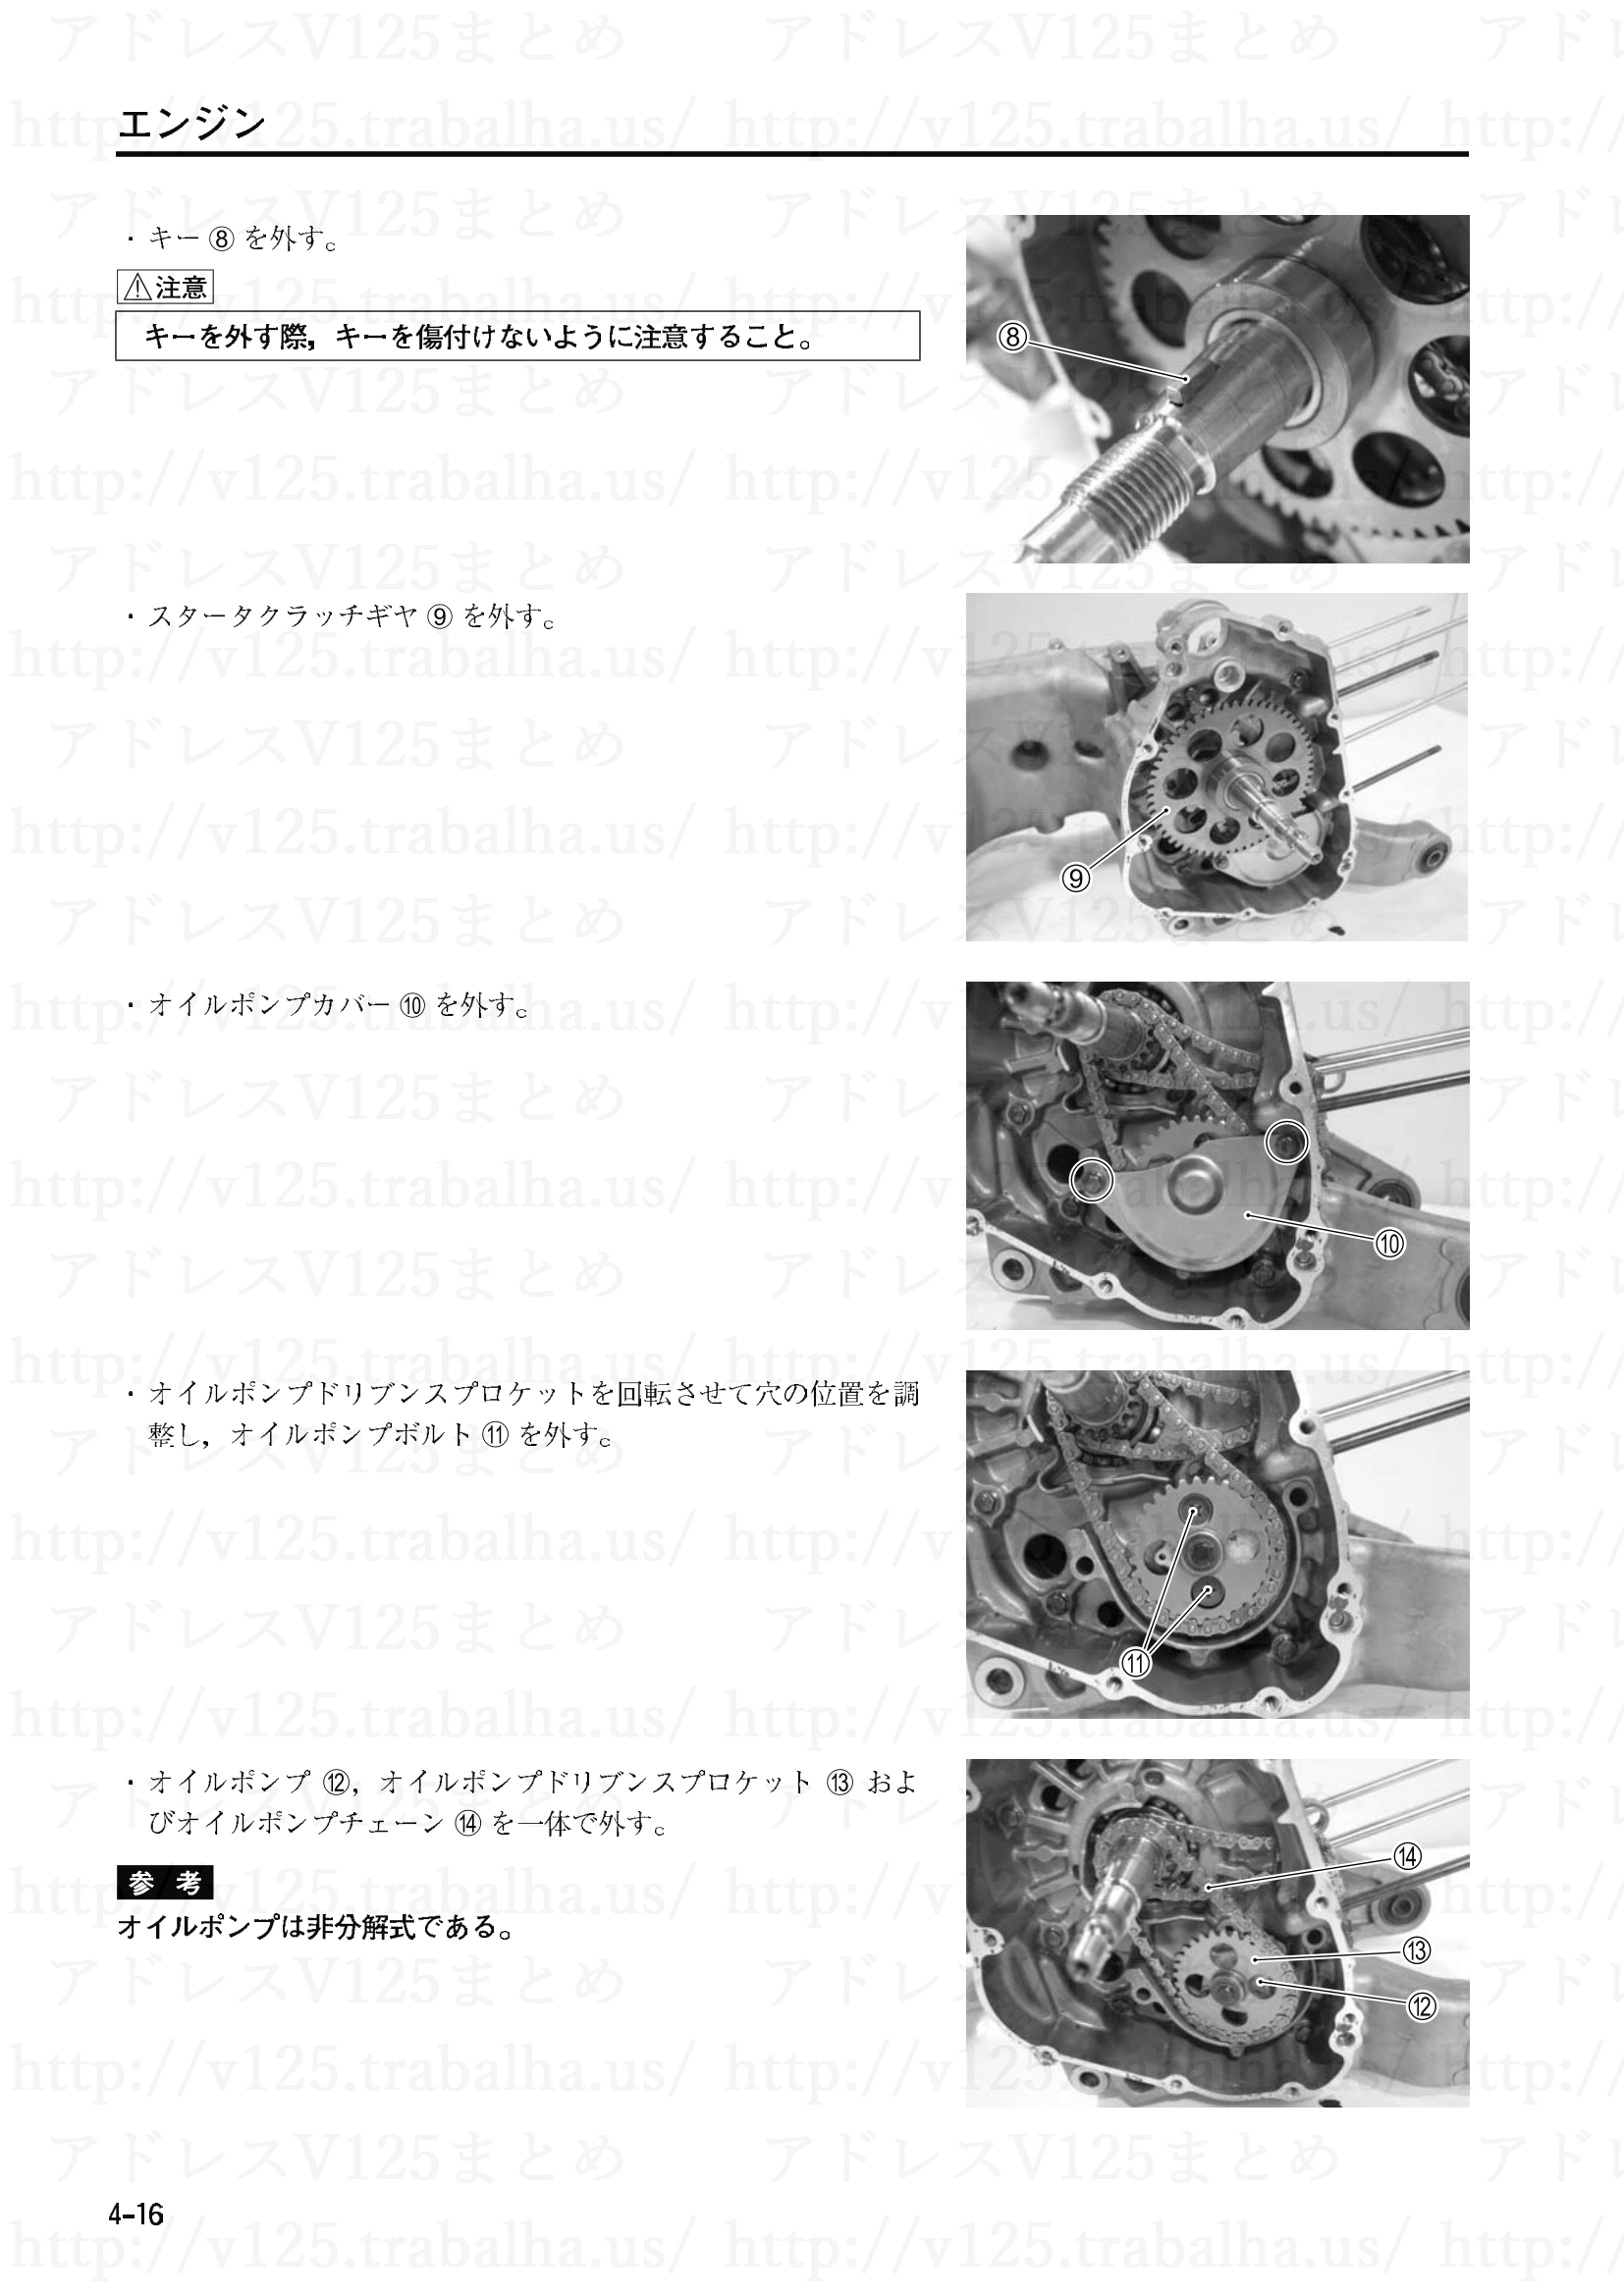 4-16【エンジン】エンジンの分解5